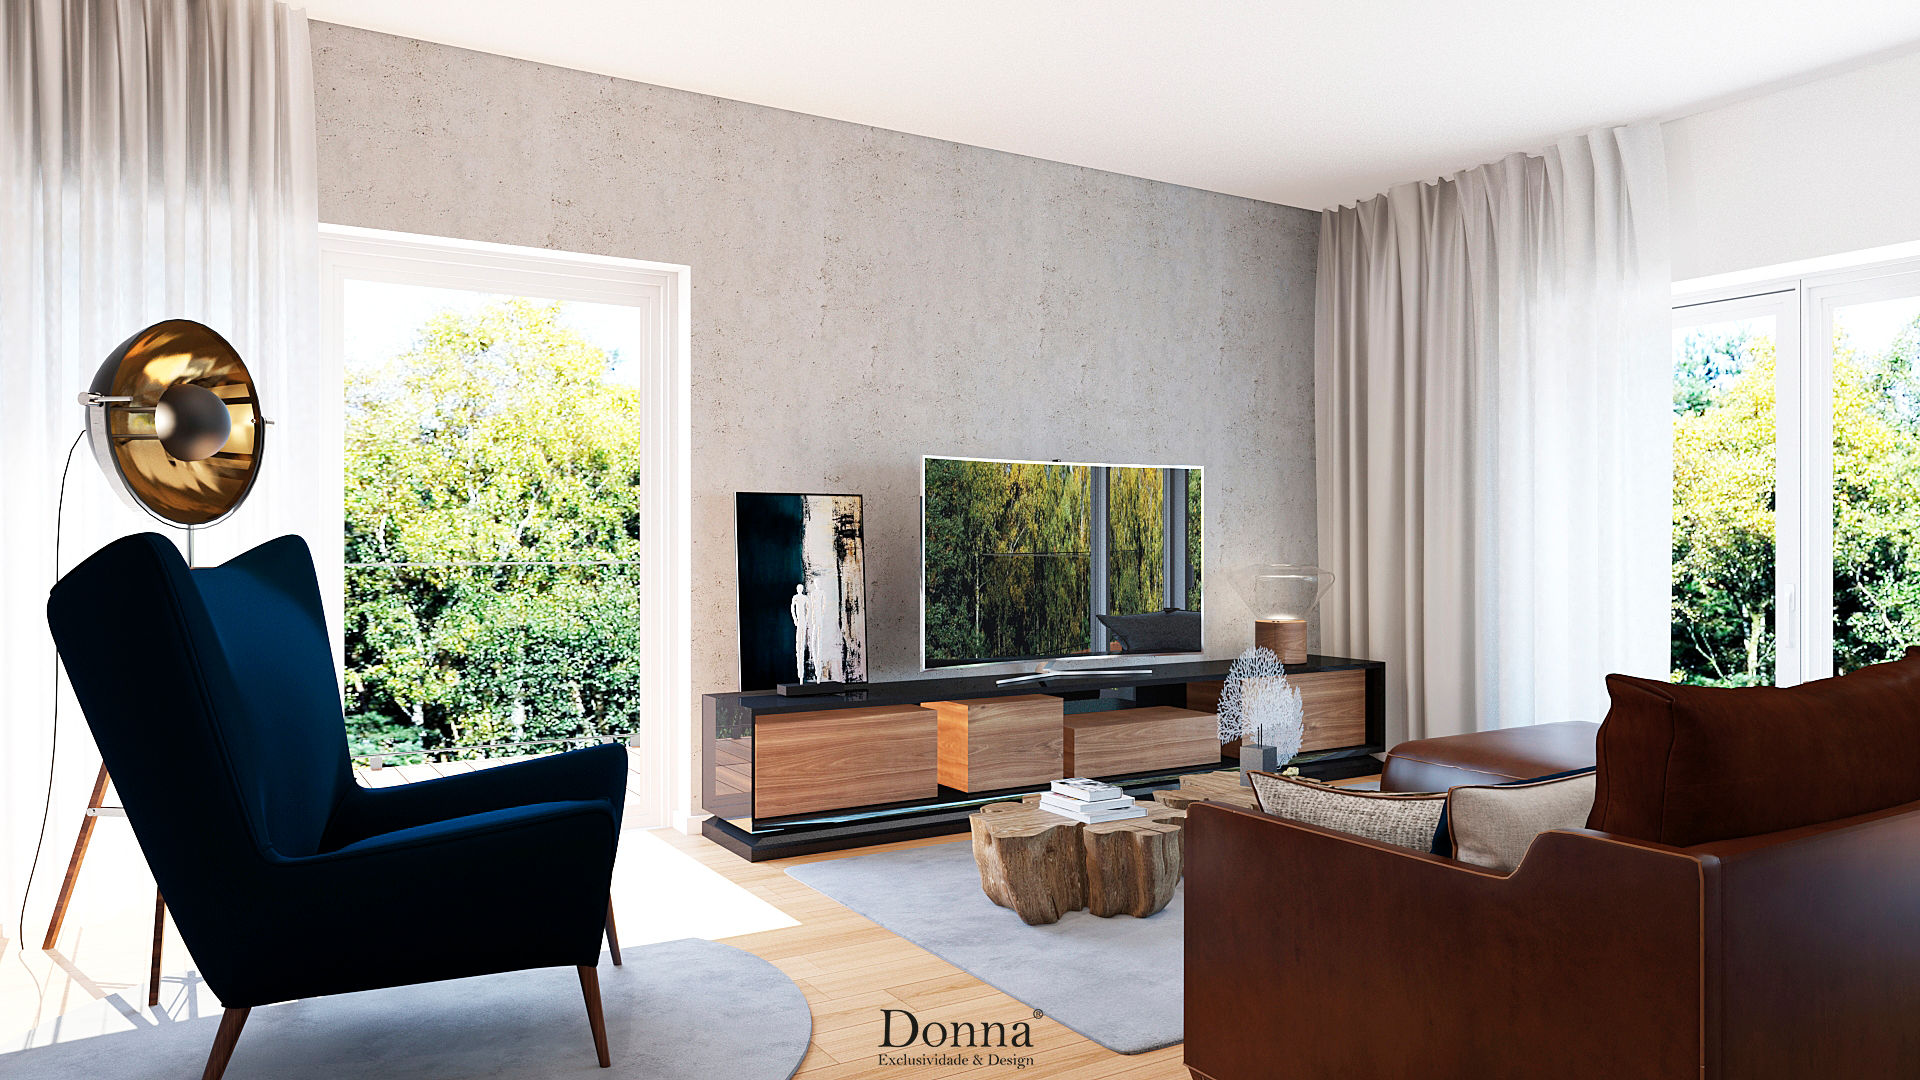 Sala de estar Apartamento Donna - Exclusividade e Design Salas de estar industriais